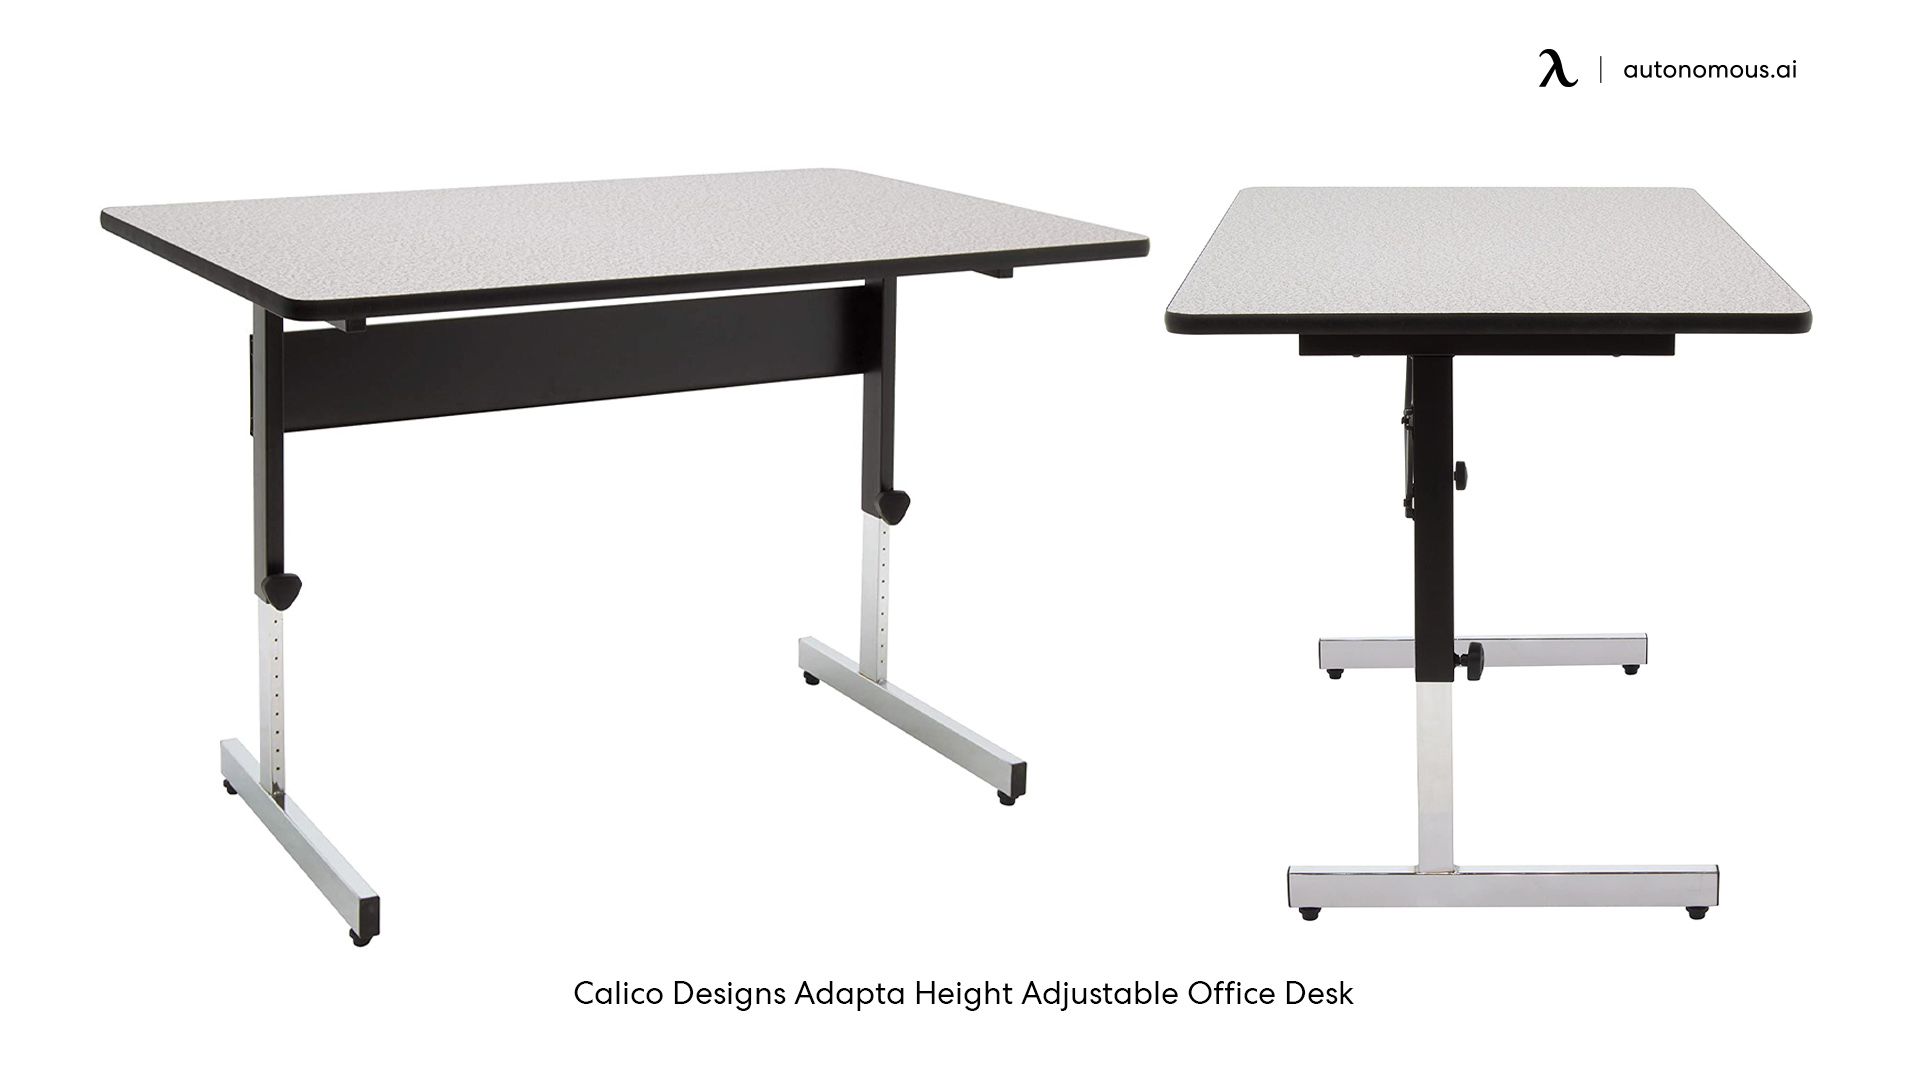 Calico Designs Adapta small standing desk